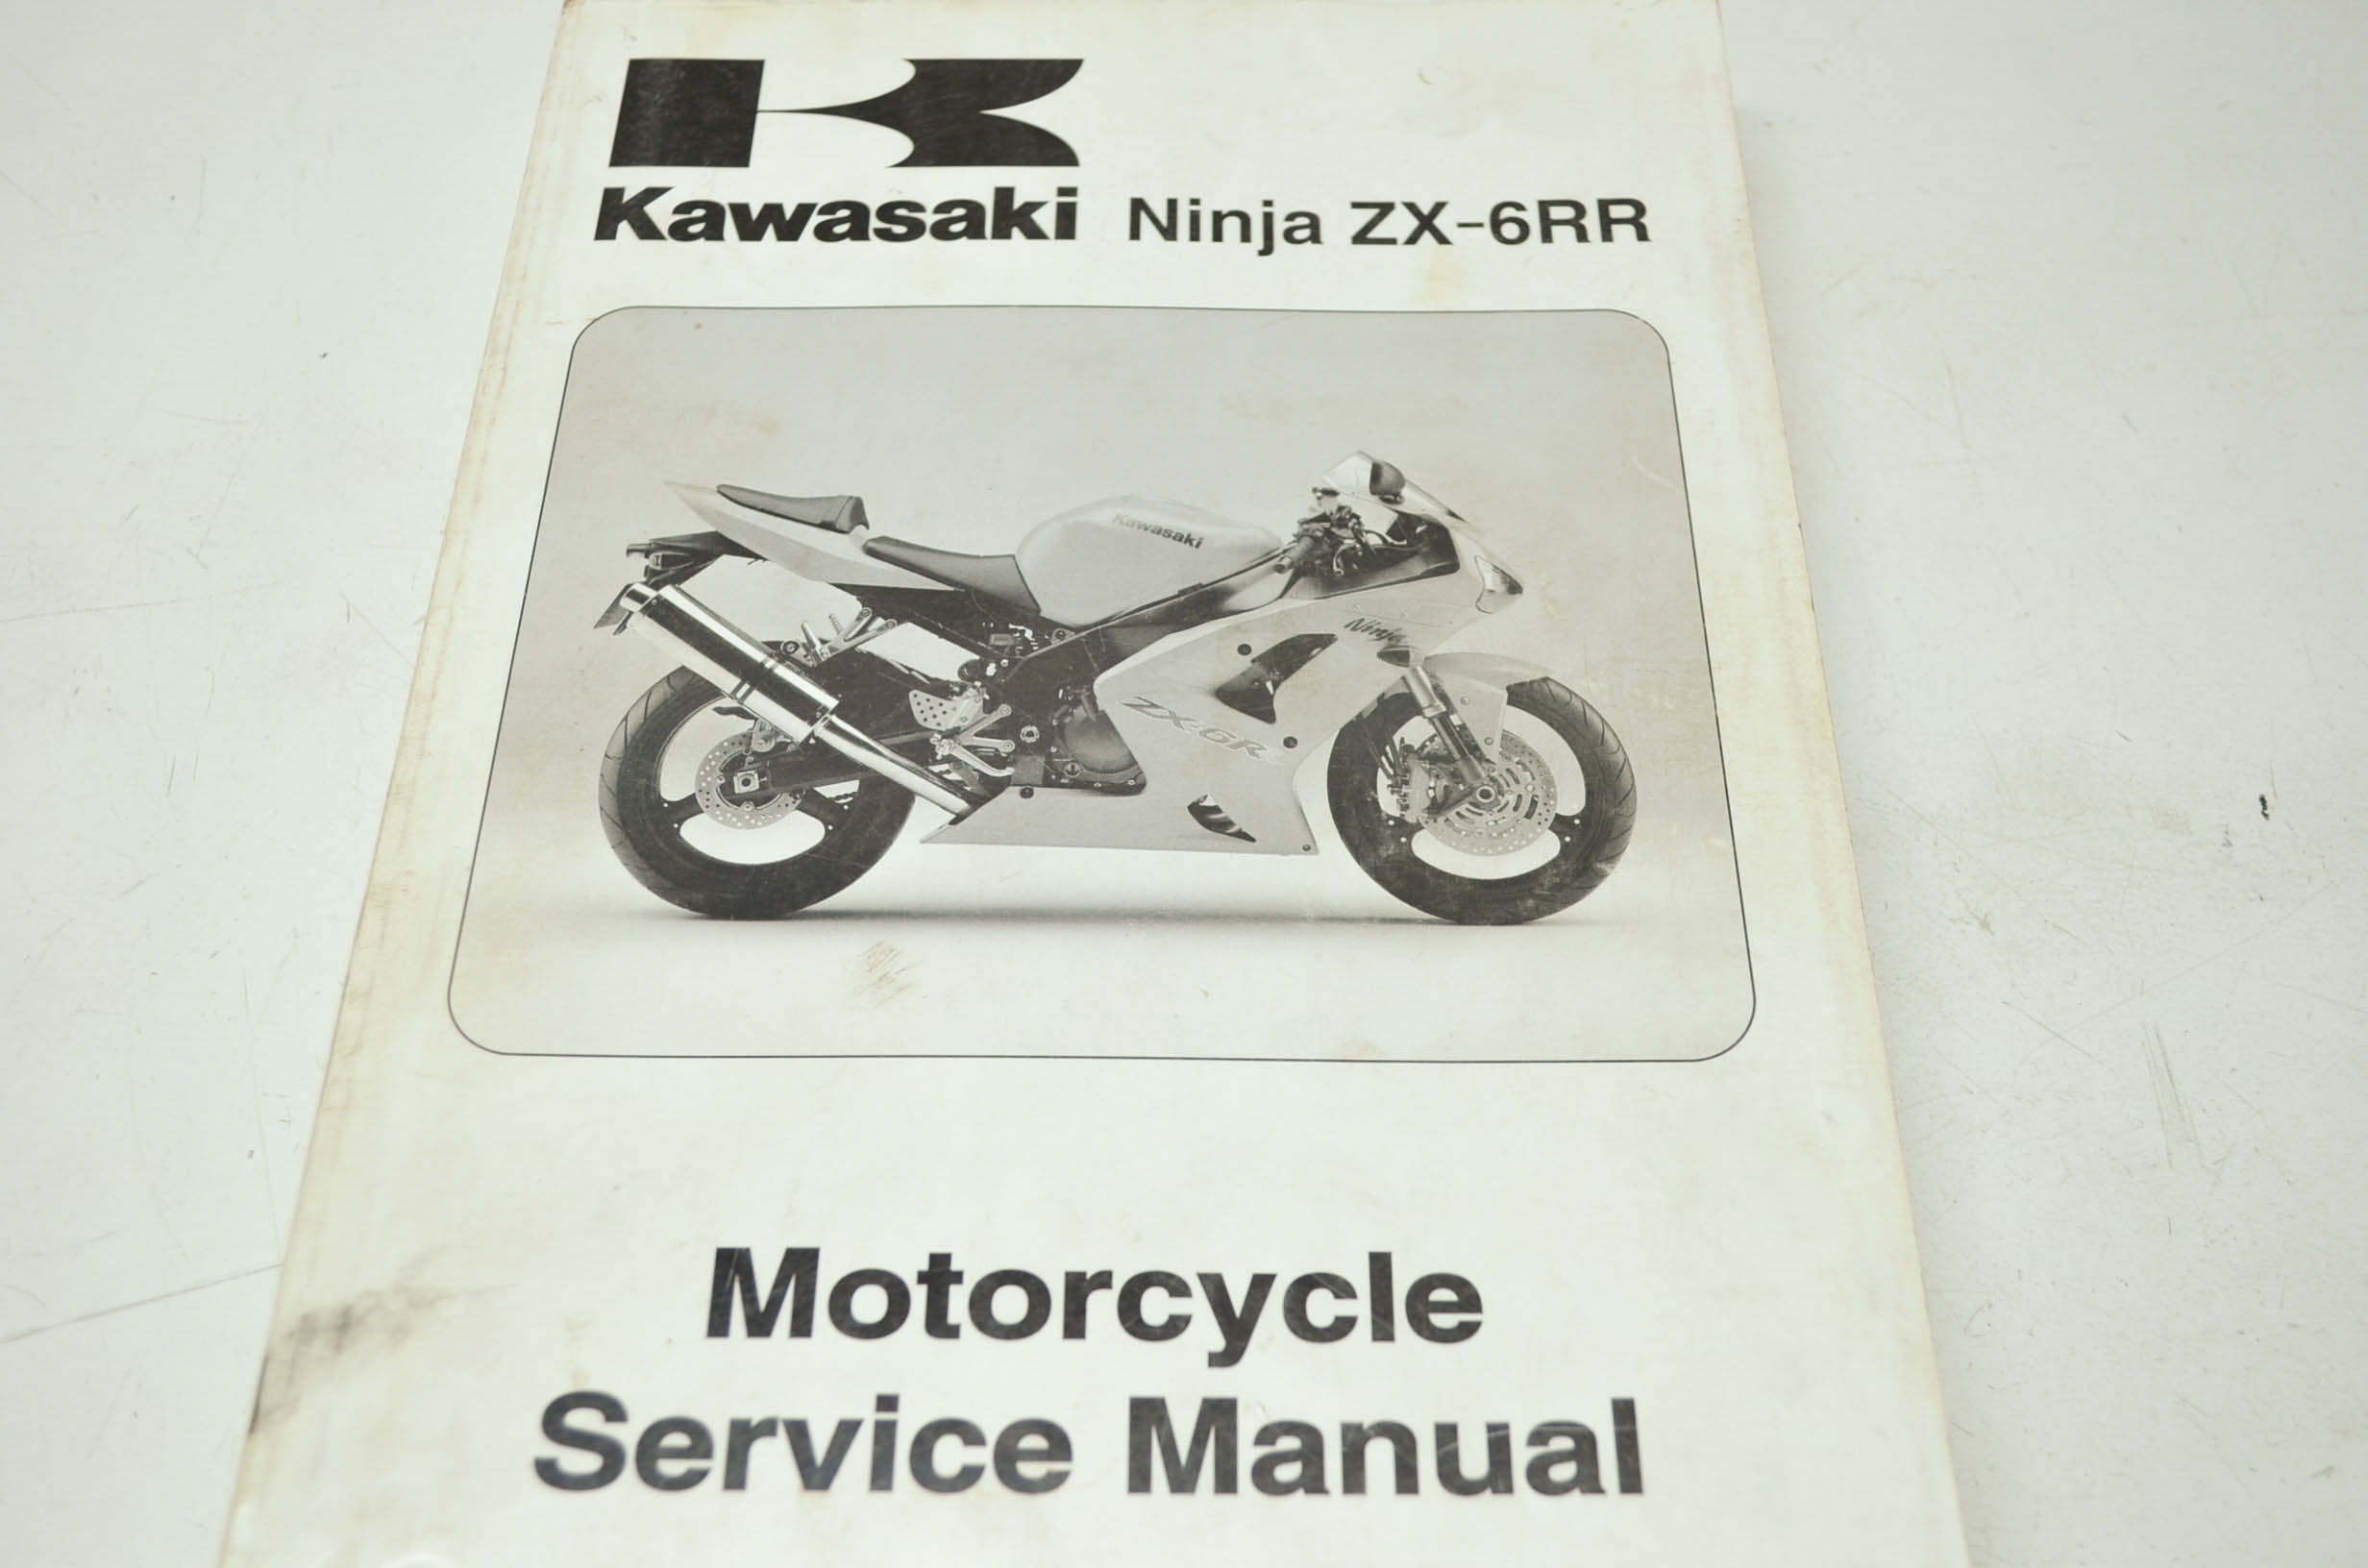 OEM Kawasaki 99924-1333-01 Service Manual ZX600-M - Walmart.com